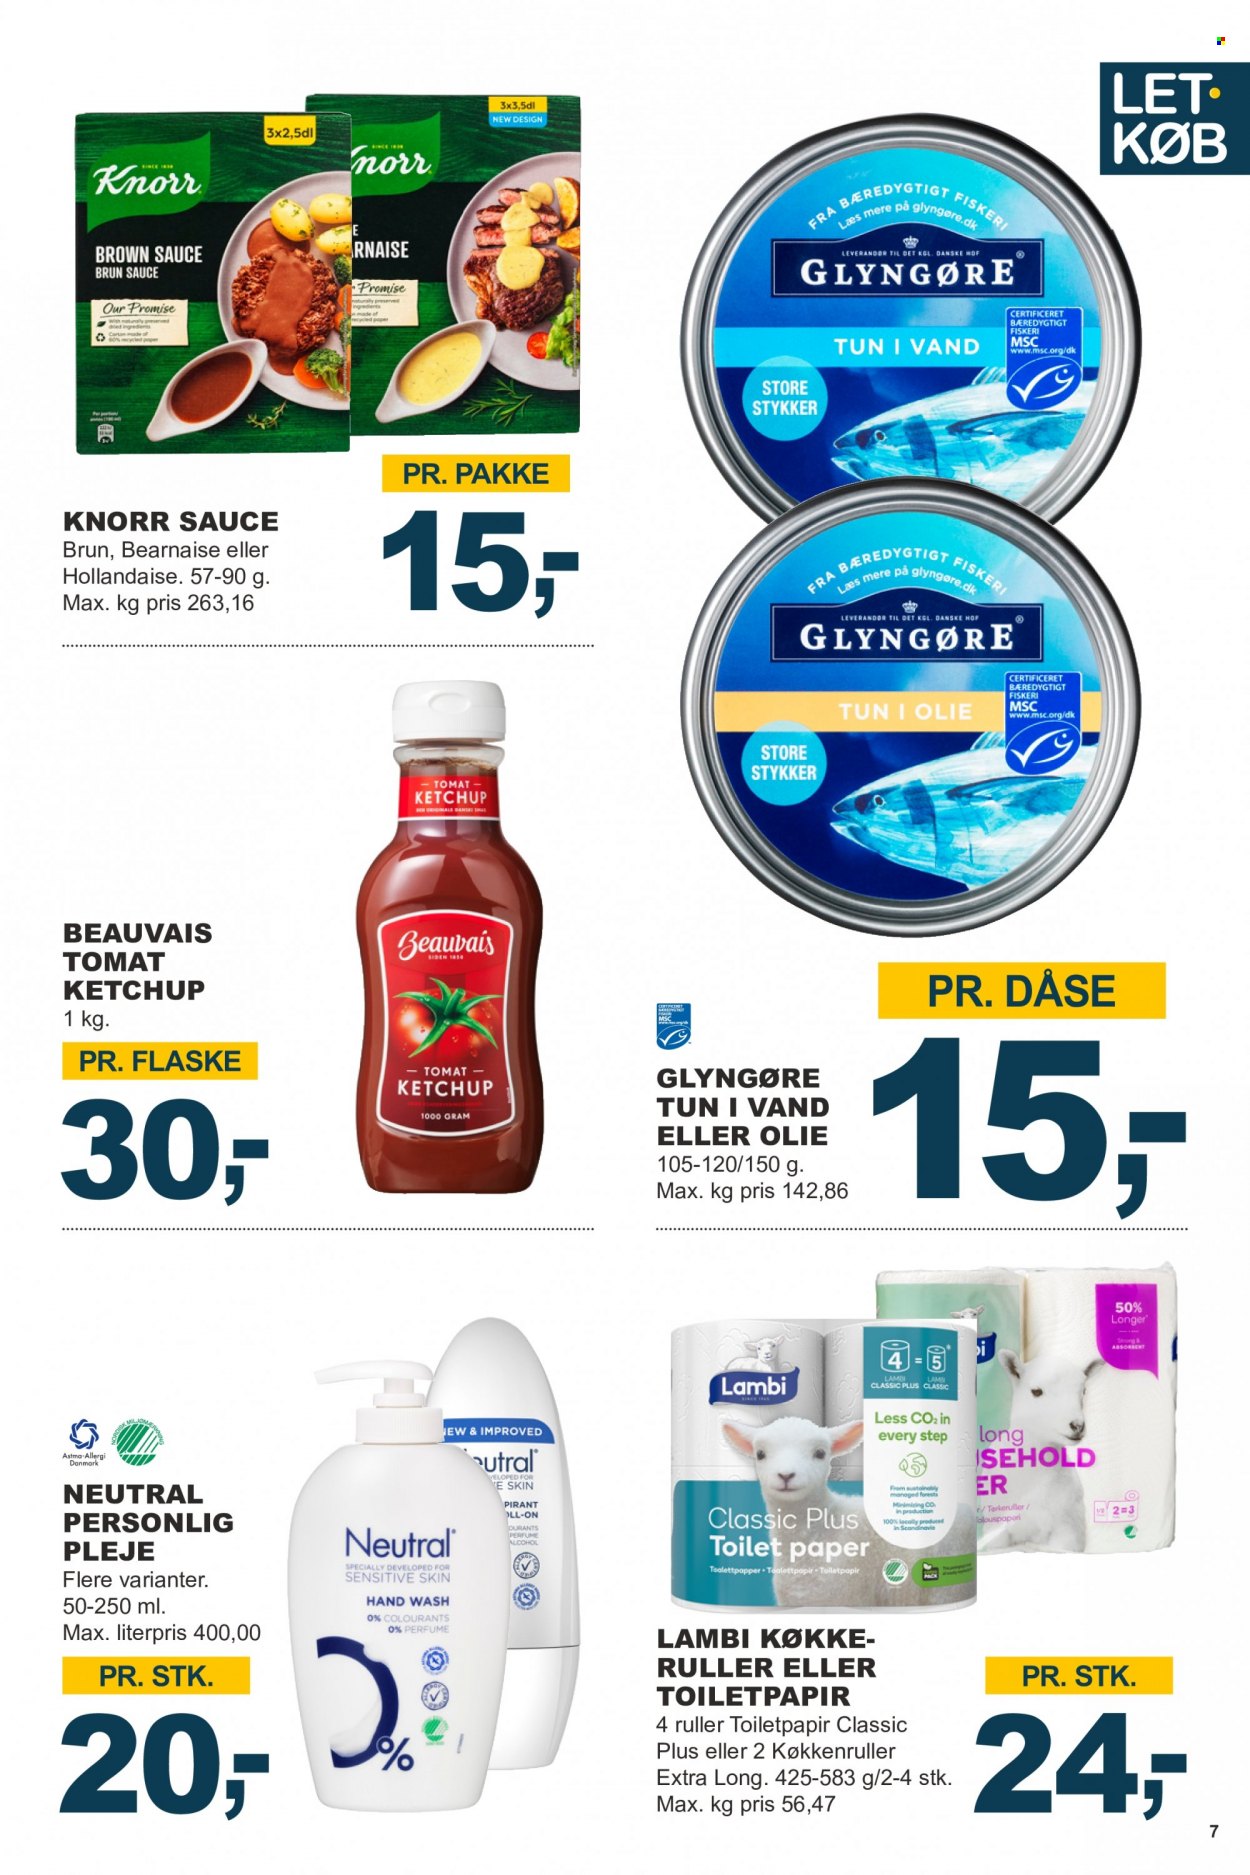 thumbnail - Let-Køb tilbud  - 27.3.2023 - 9.4.2023 - tilbudsprodukter - tun, Knorr, ketchup, sauce, olie, køkkenrulle, Lambi, toiletpapir. Side 7.